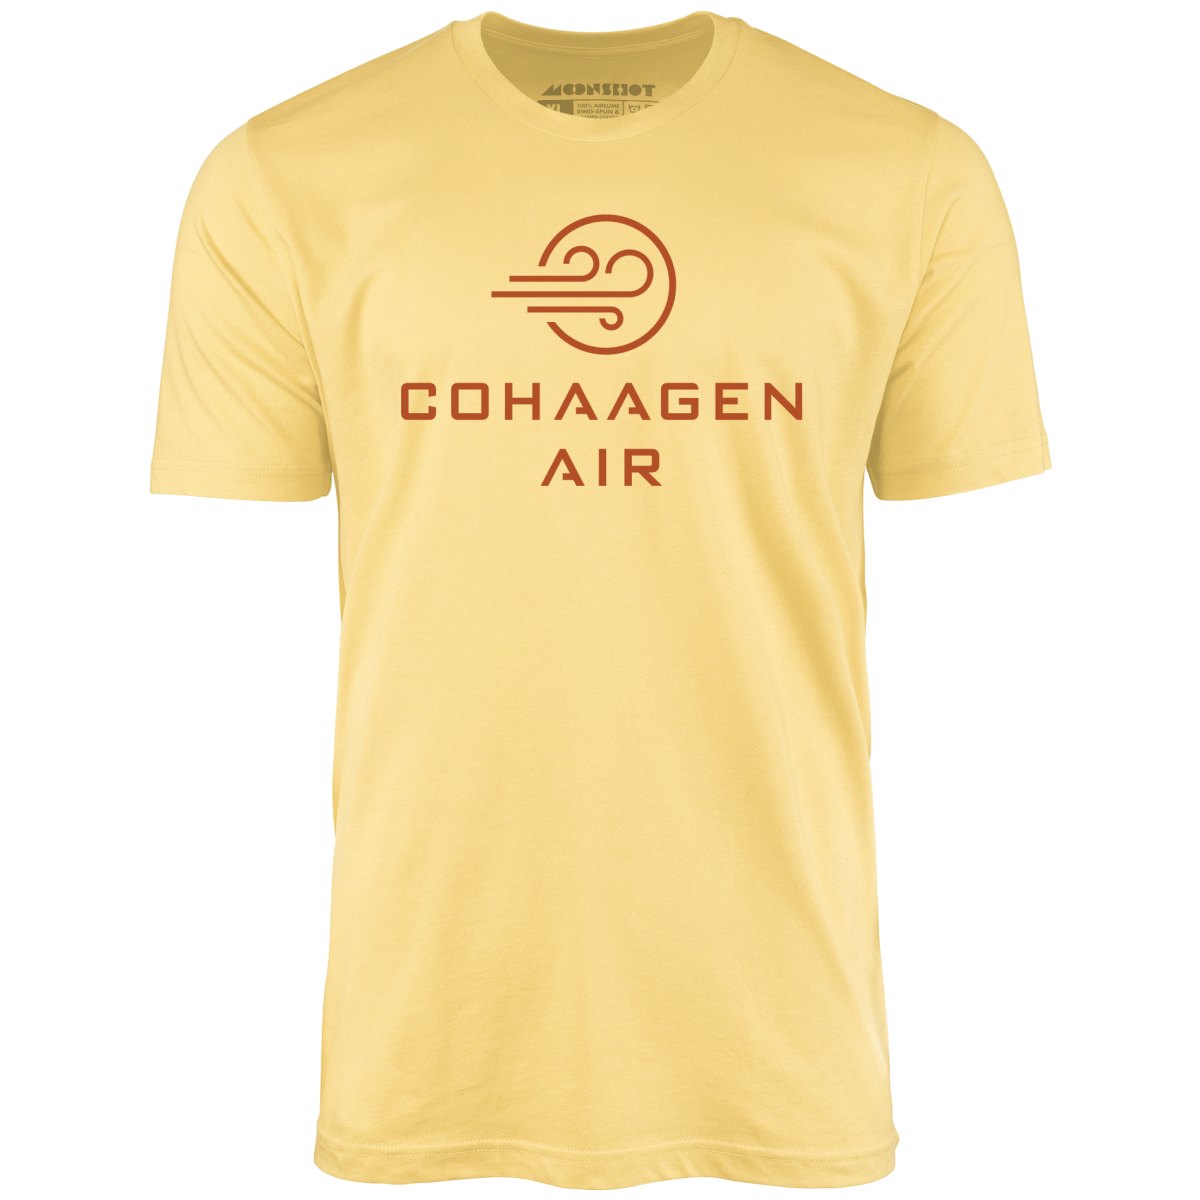 Cohaagen Air - Total Recall - Unisex T-Shirt